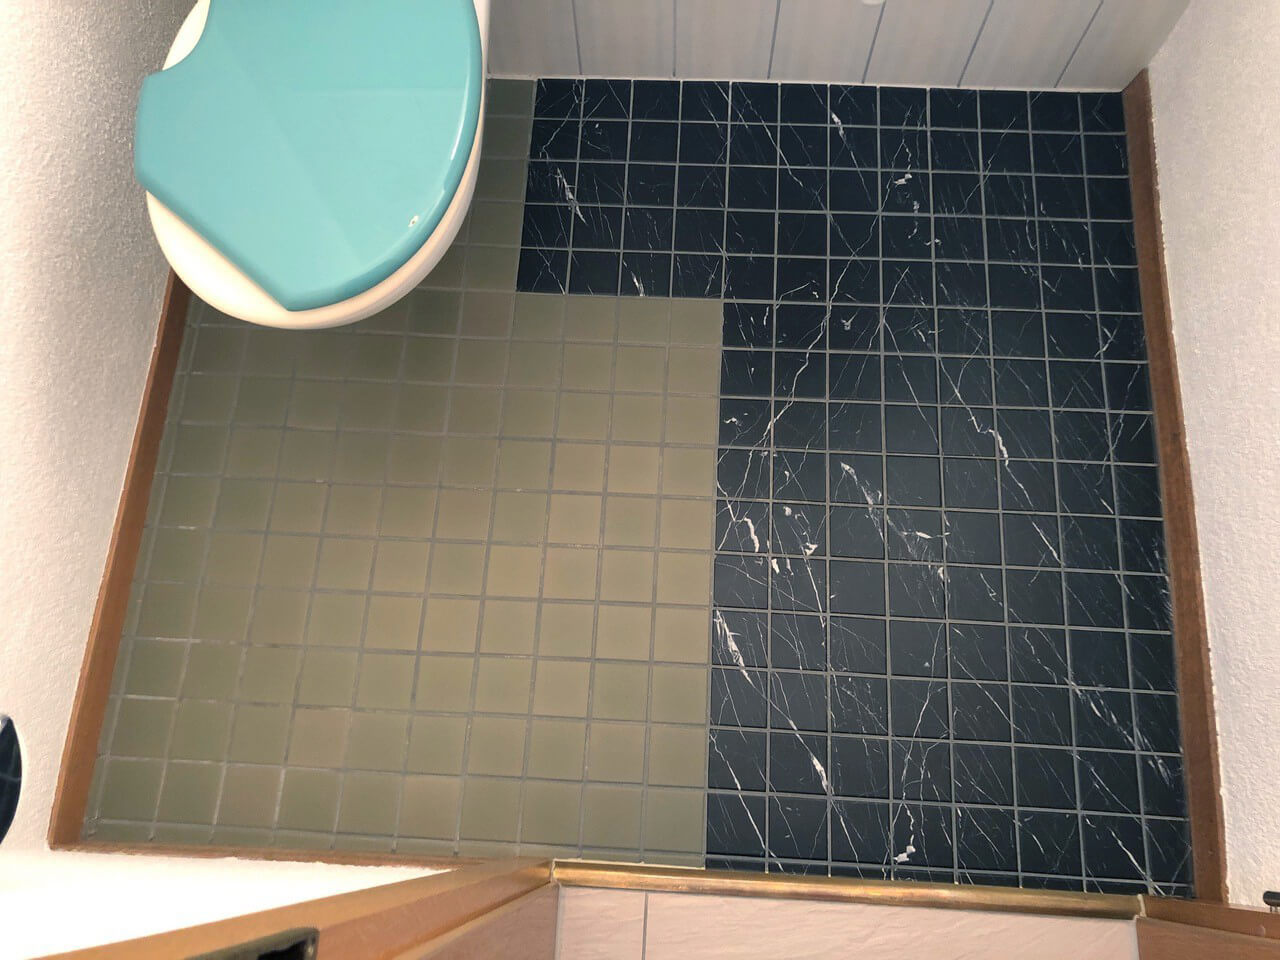 Diseño de baños creativo con adhesivos para baldosas ejemplo de baldosas en WC de invitados en mármol negro 1